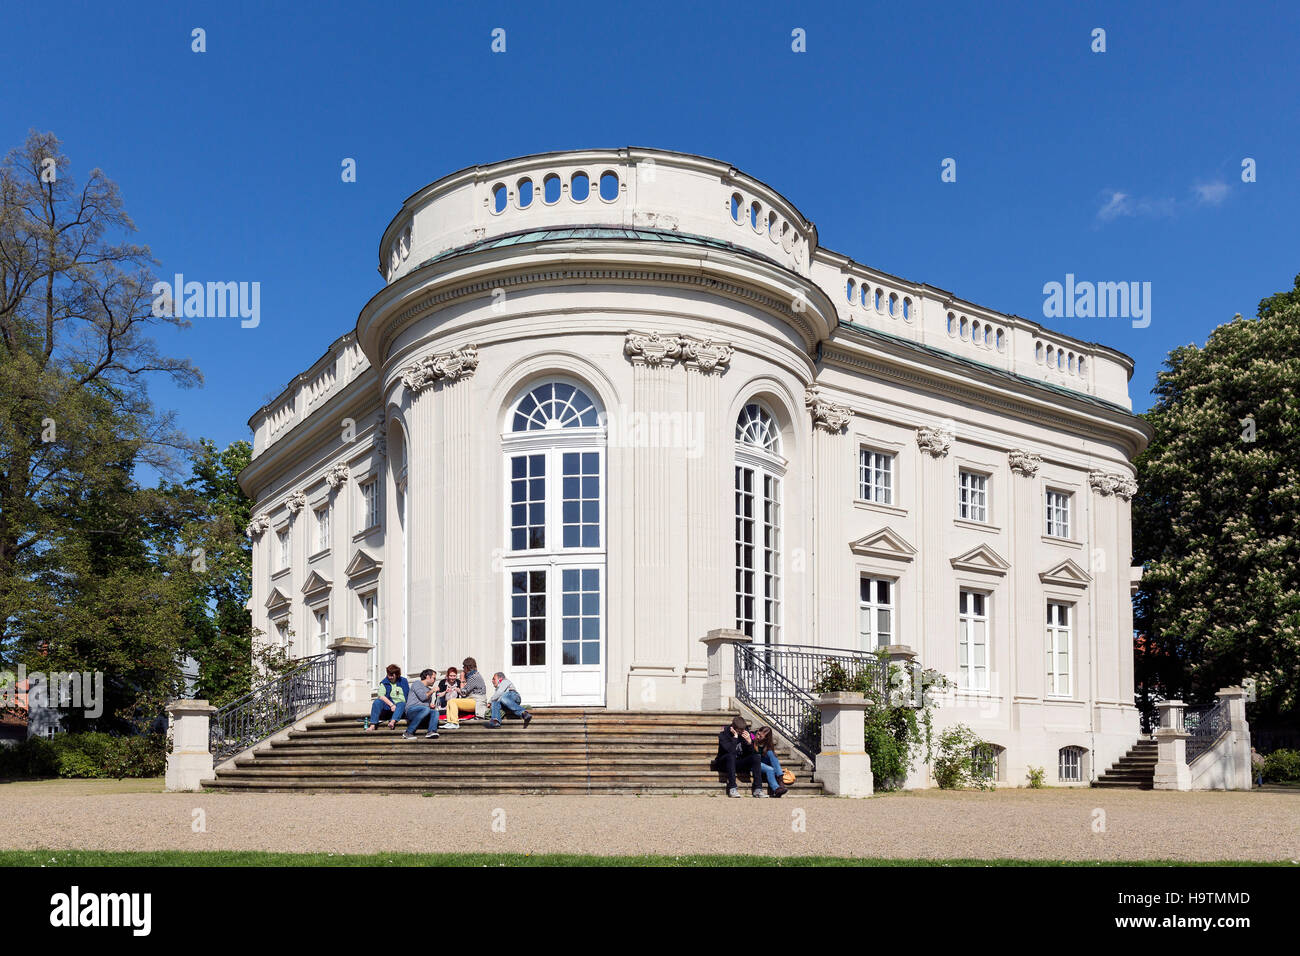 Richmond Palast, heute Auditorium und Standesamt, Braunschweig, Niedersachsen, Deutschland Stockfoto